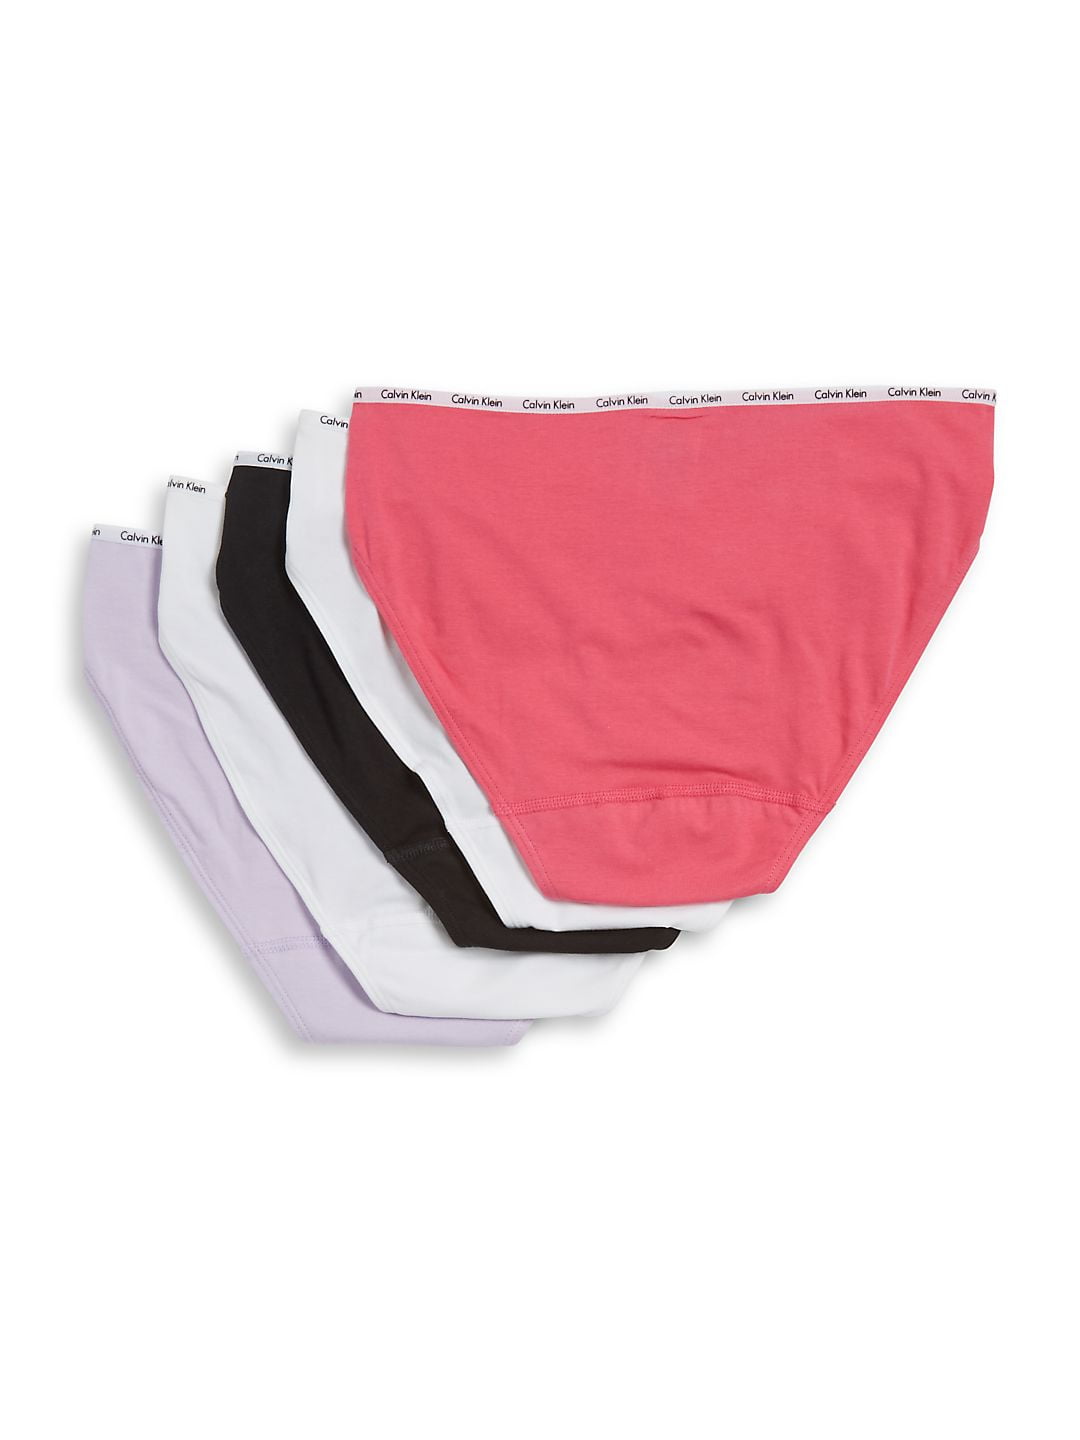 Buy Anne Klein Women's Underwear - 5 Pack Bikini Briefs (S-XL), Violet  Ice/Grey/Black, Medium at